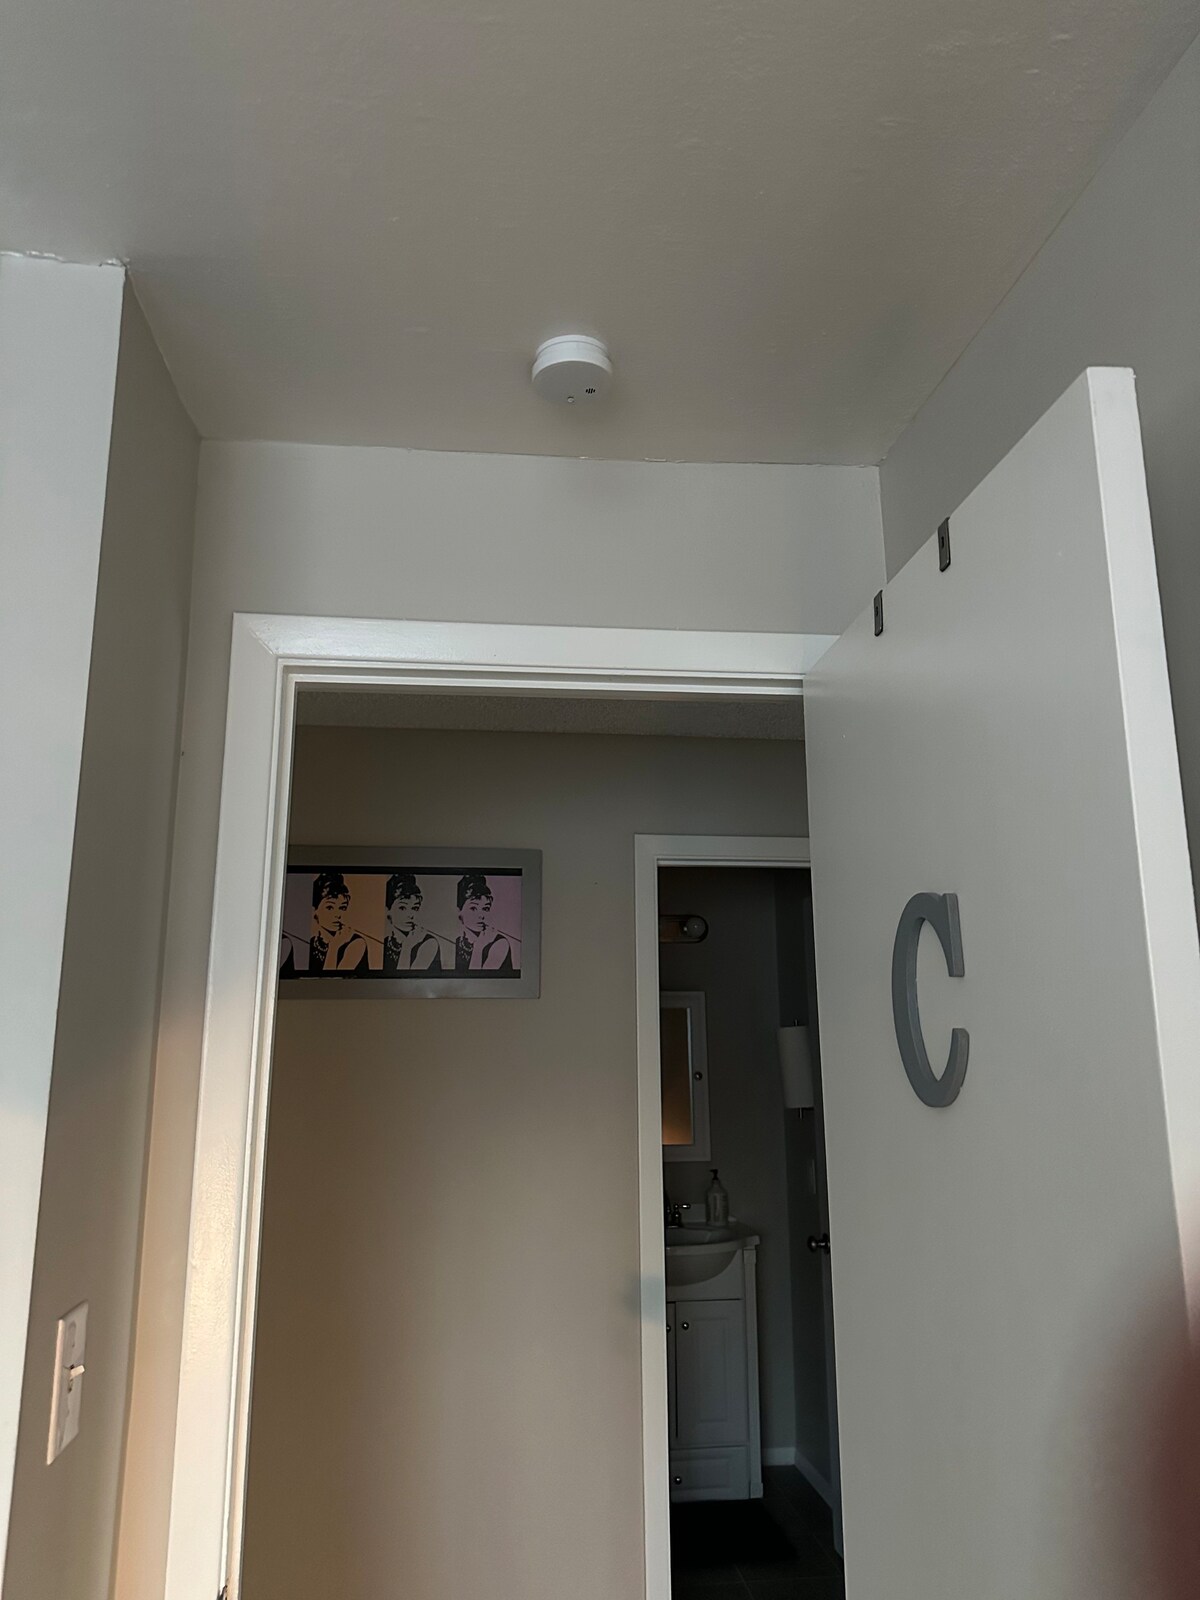 My Condo Rox - Room C